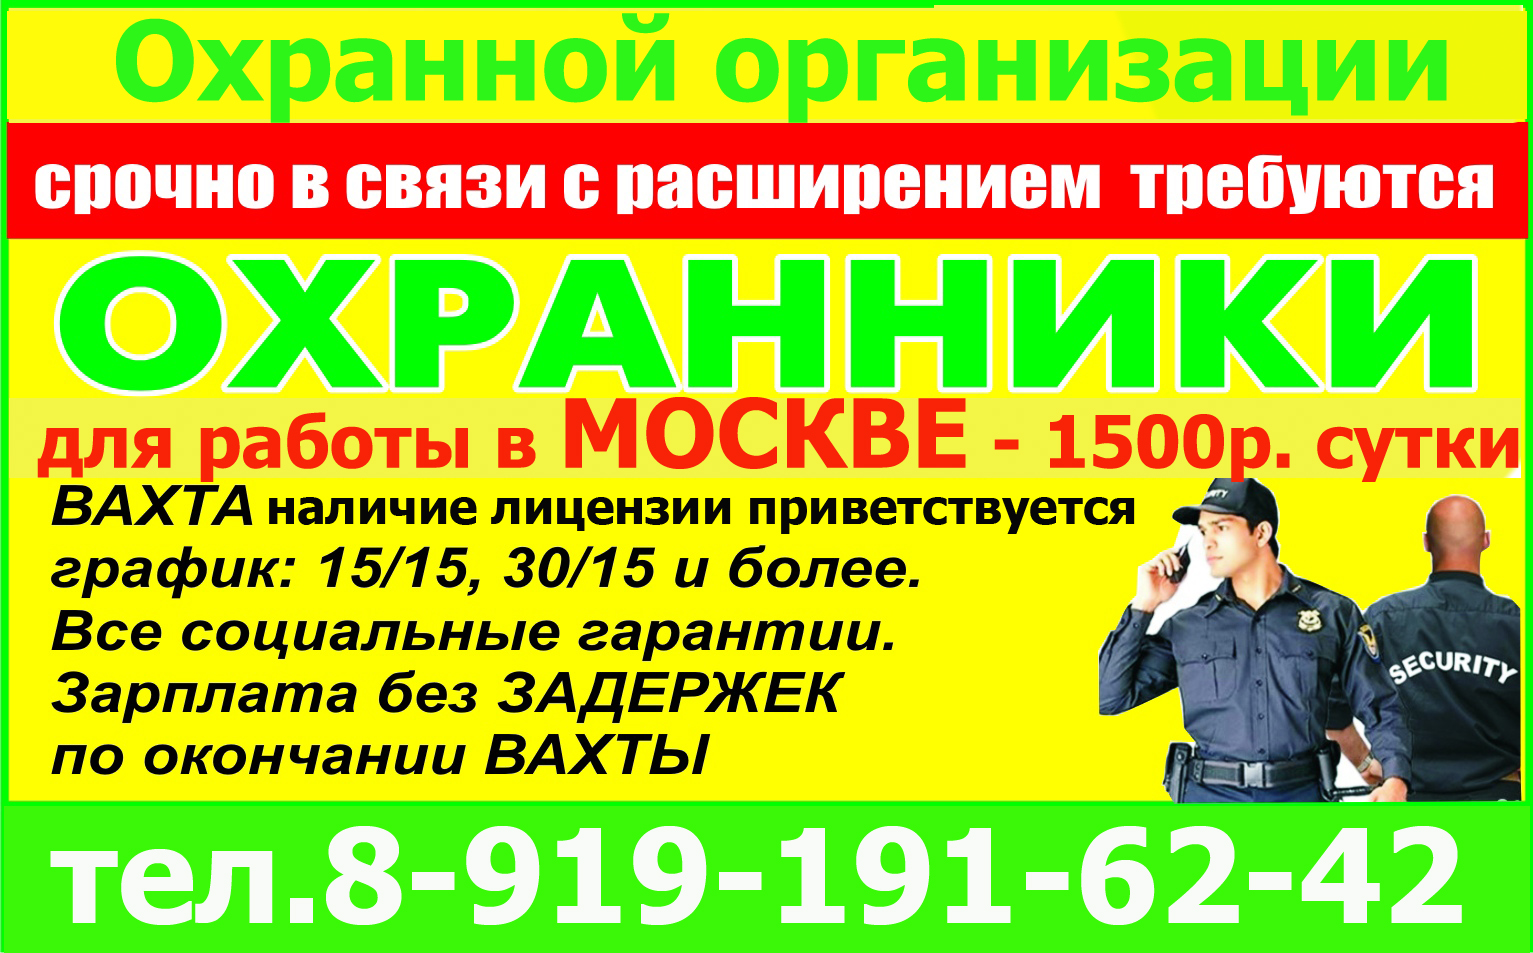 Найти работу в москве